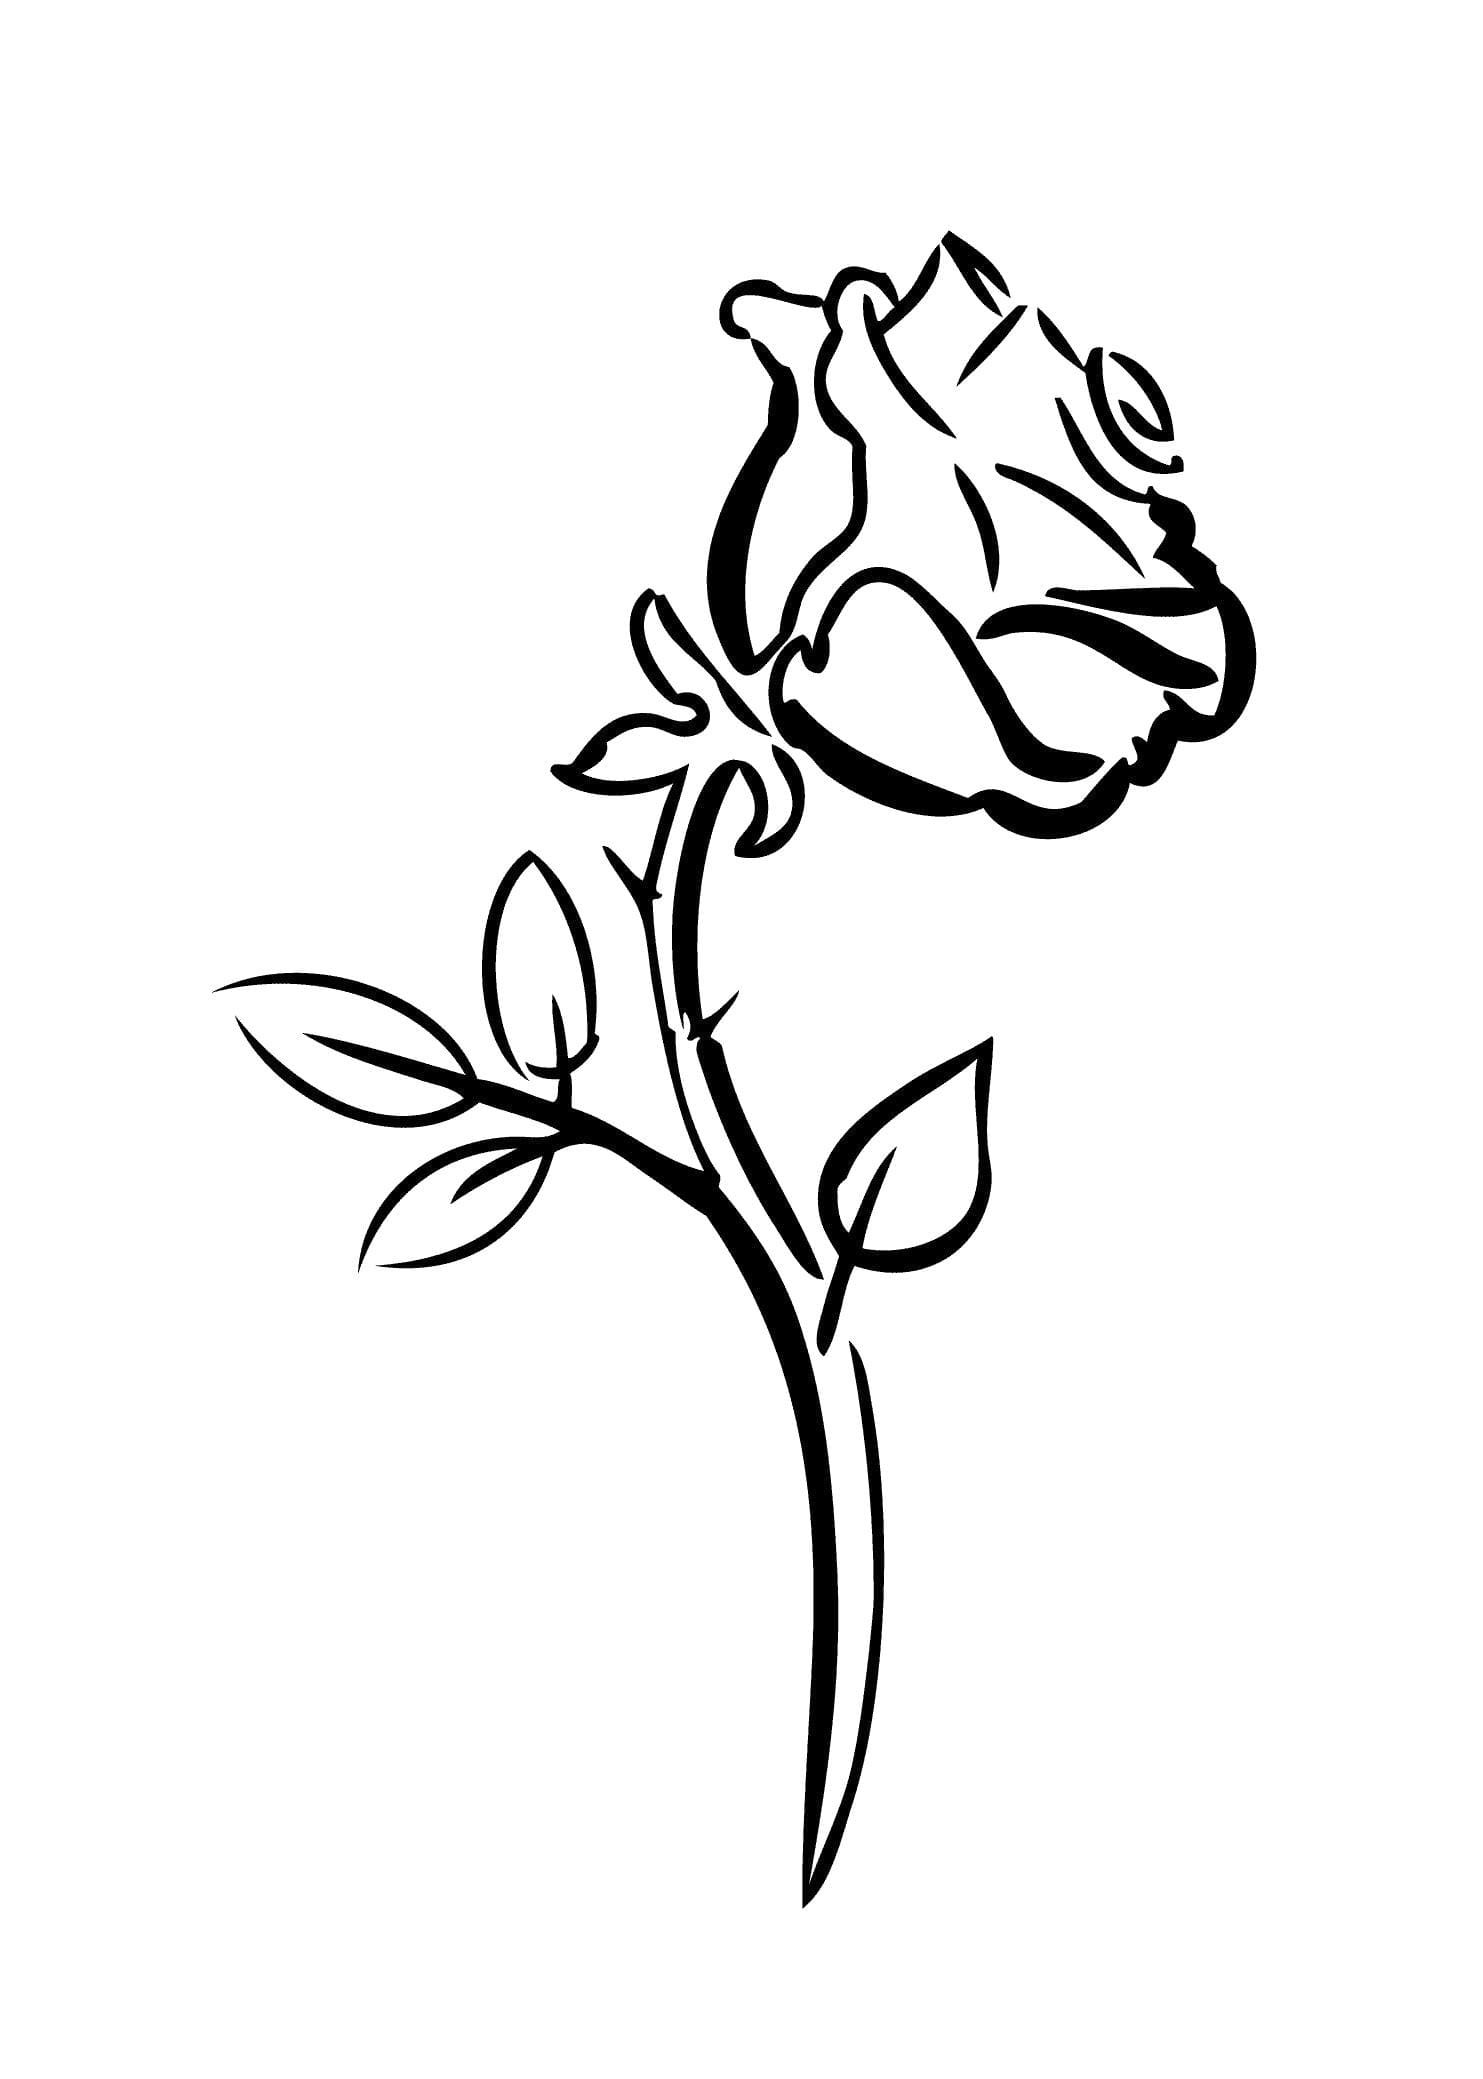 Раскраски Роза - Распечатайте королеву цветов онлайн